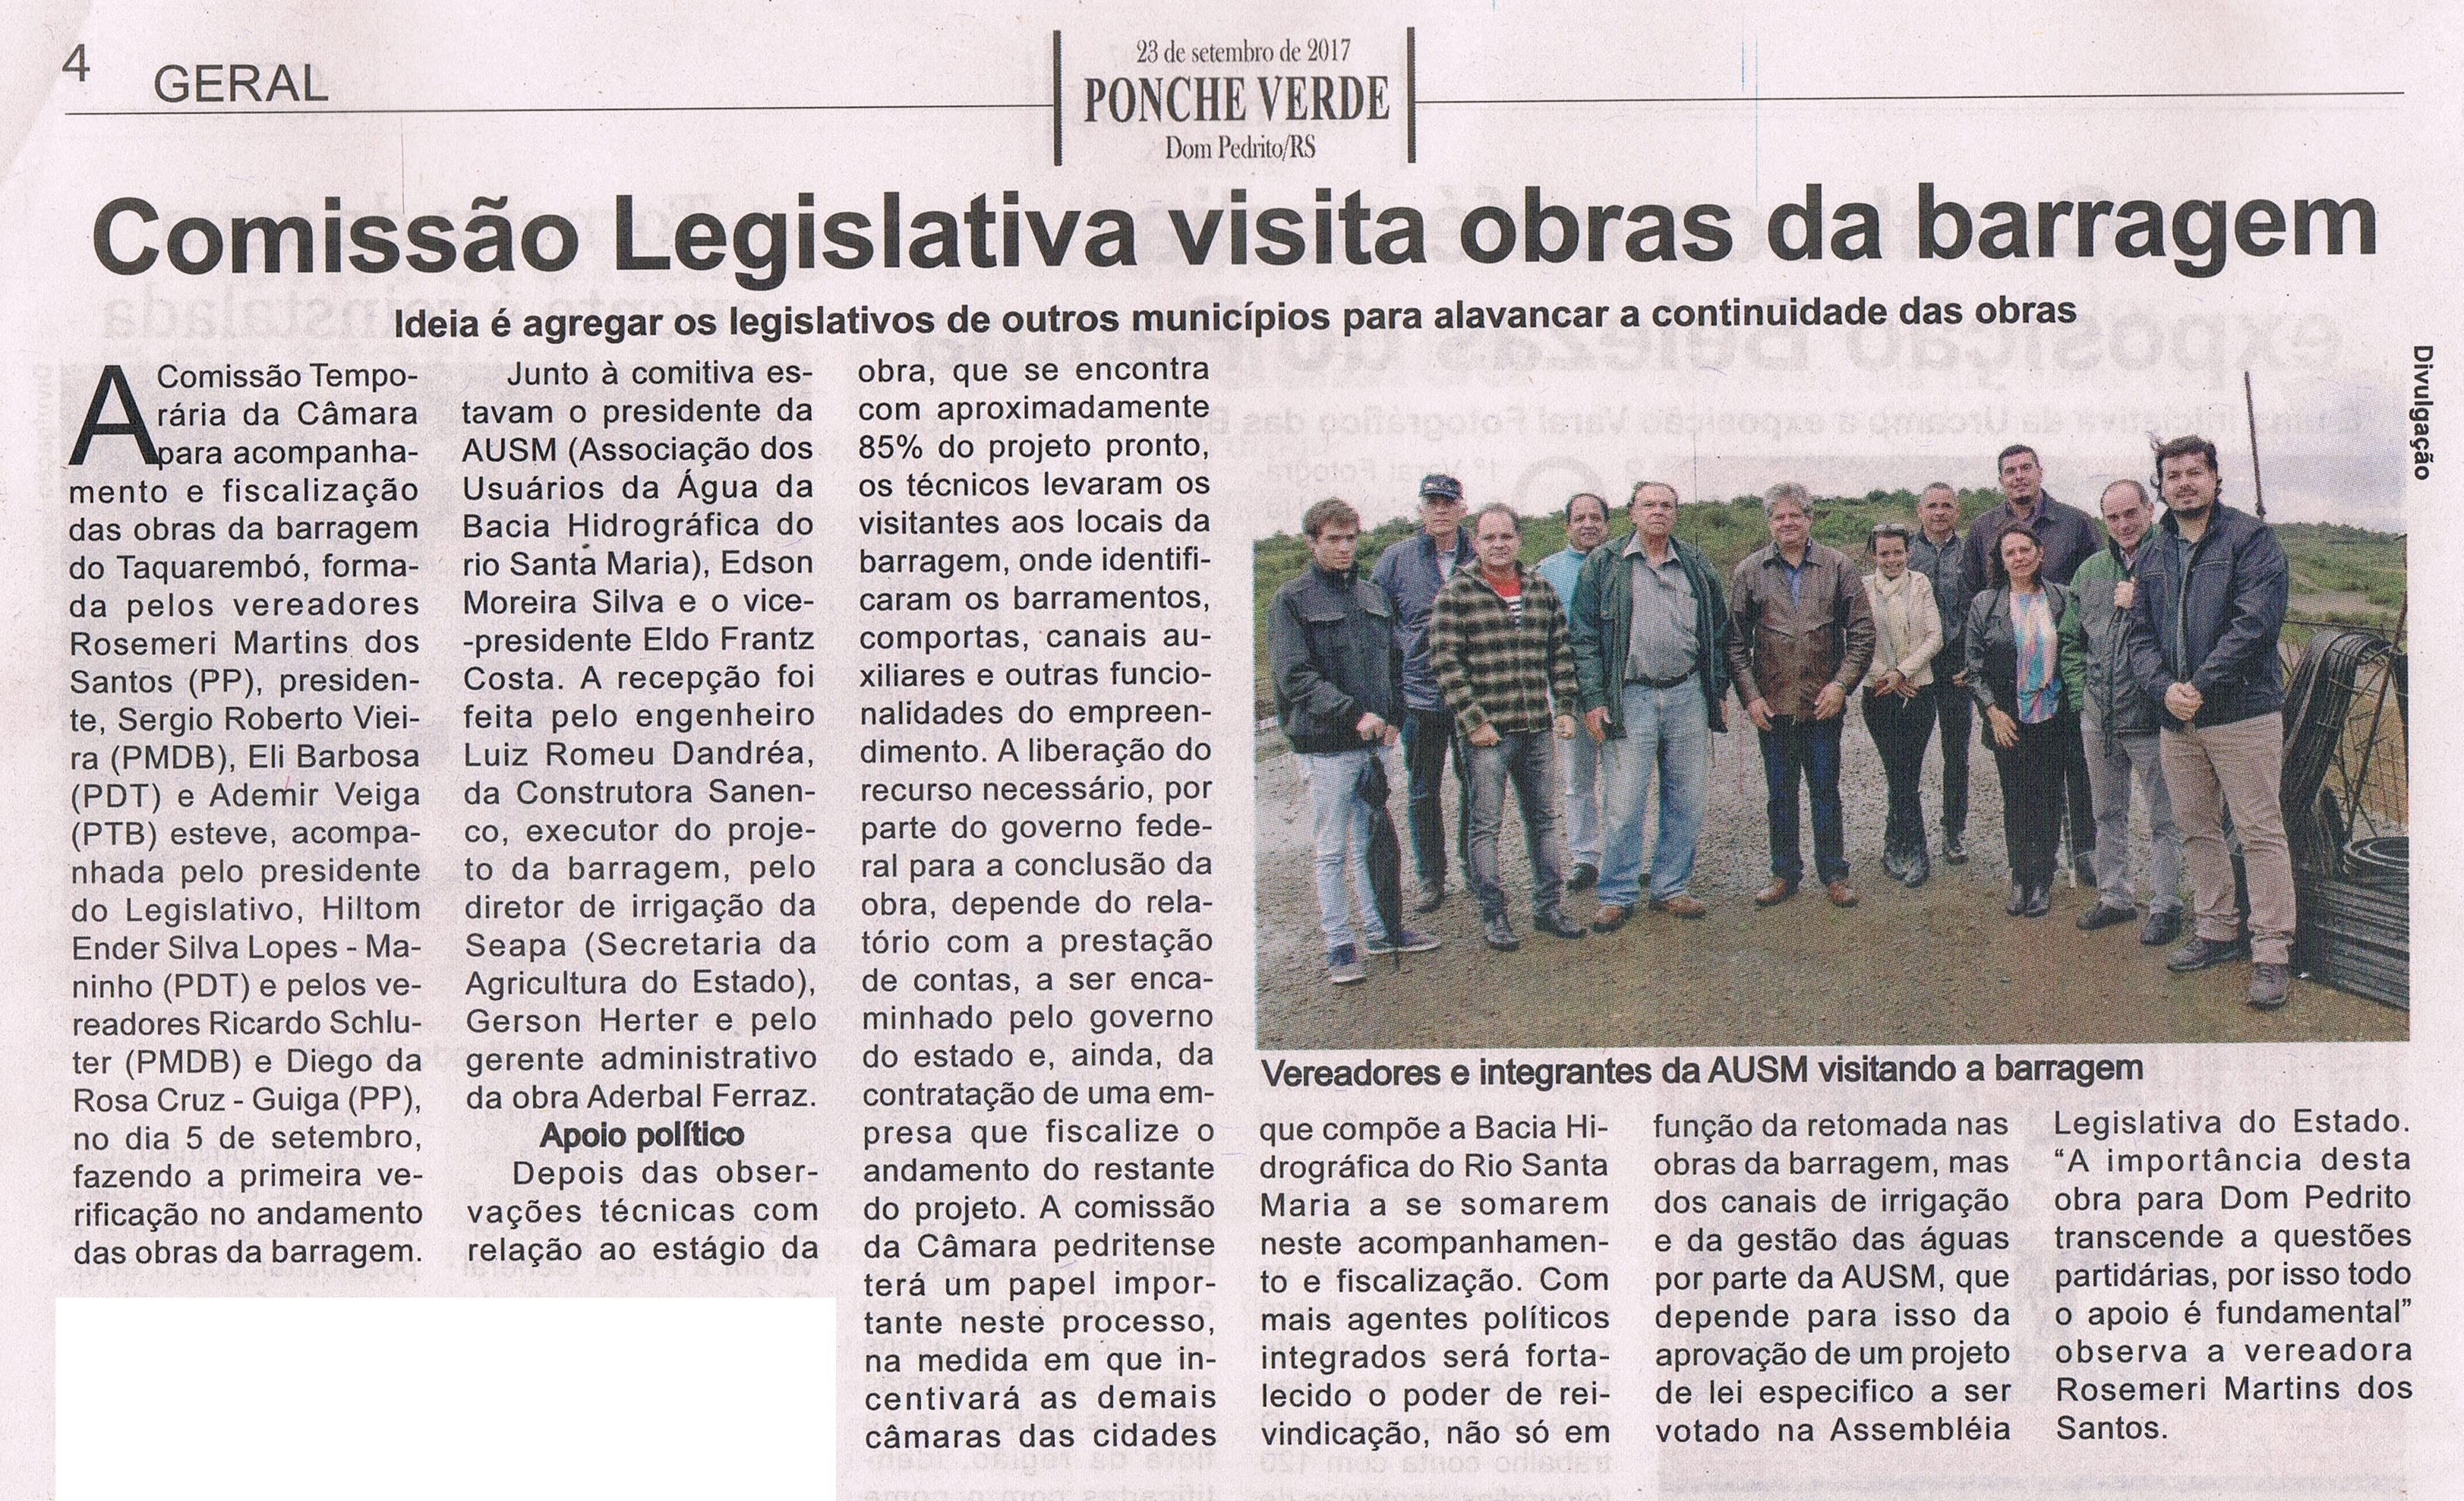 jornal ponche verde - comisso legislativa visita obras da barragem - 23-09-2017 - pg 425092017